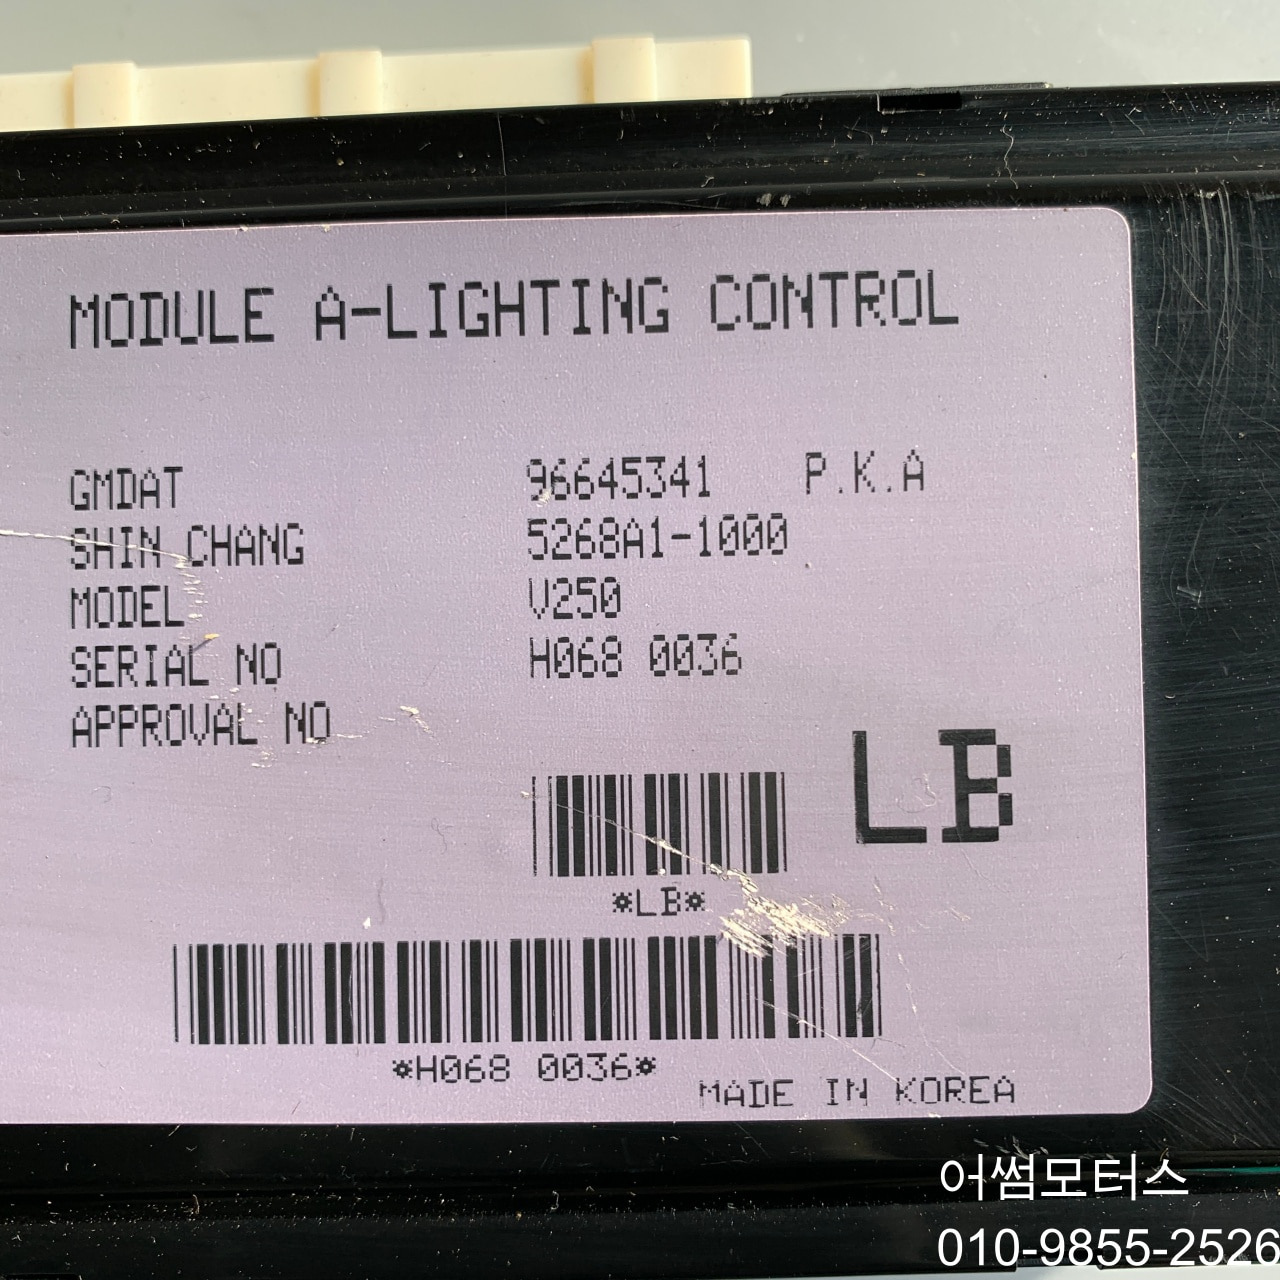 토스카 (06~08년) 모듈 a 라이팅 콘트롤 / module a-lighting control 5268a11000 96645341